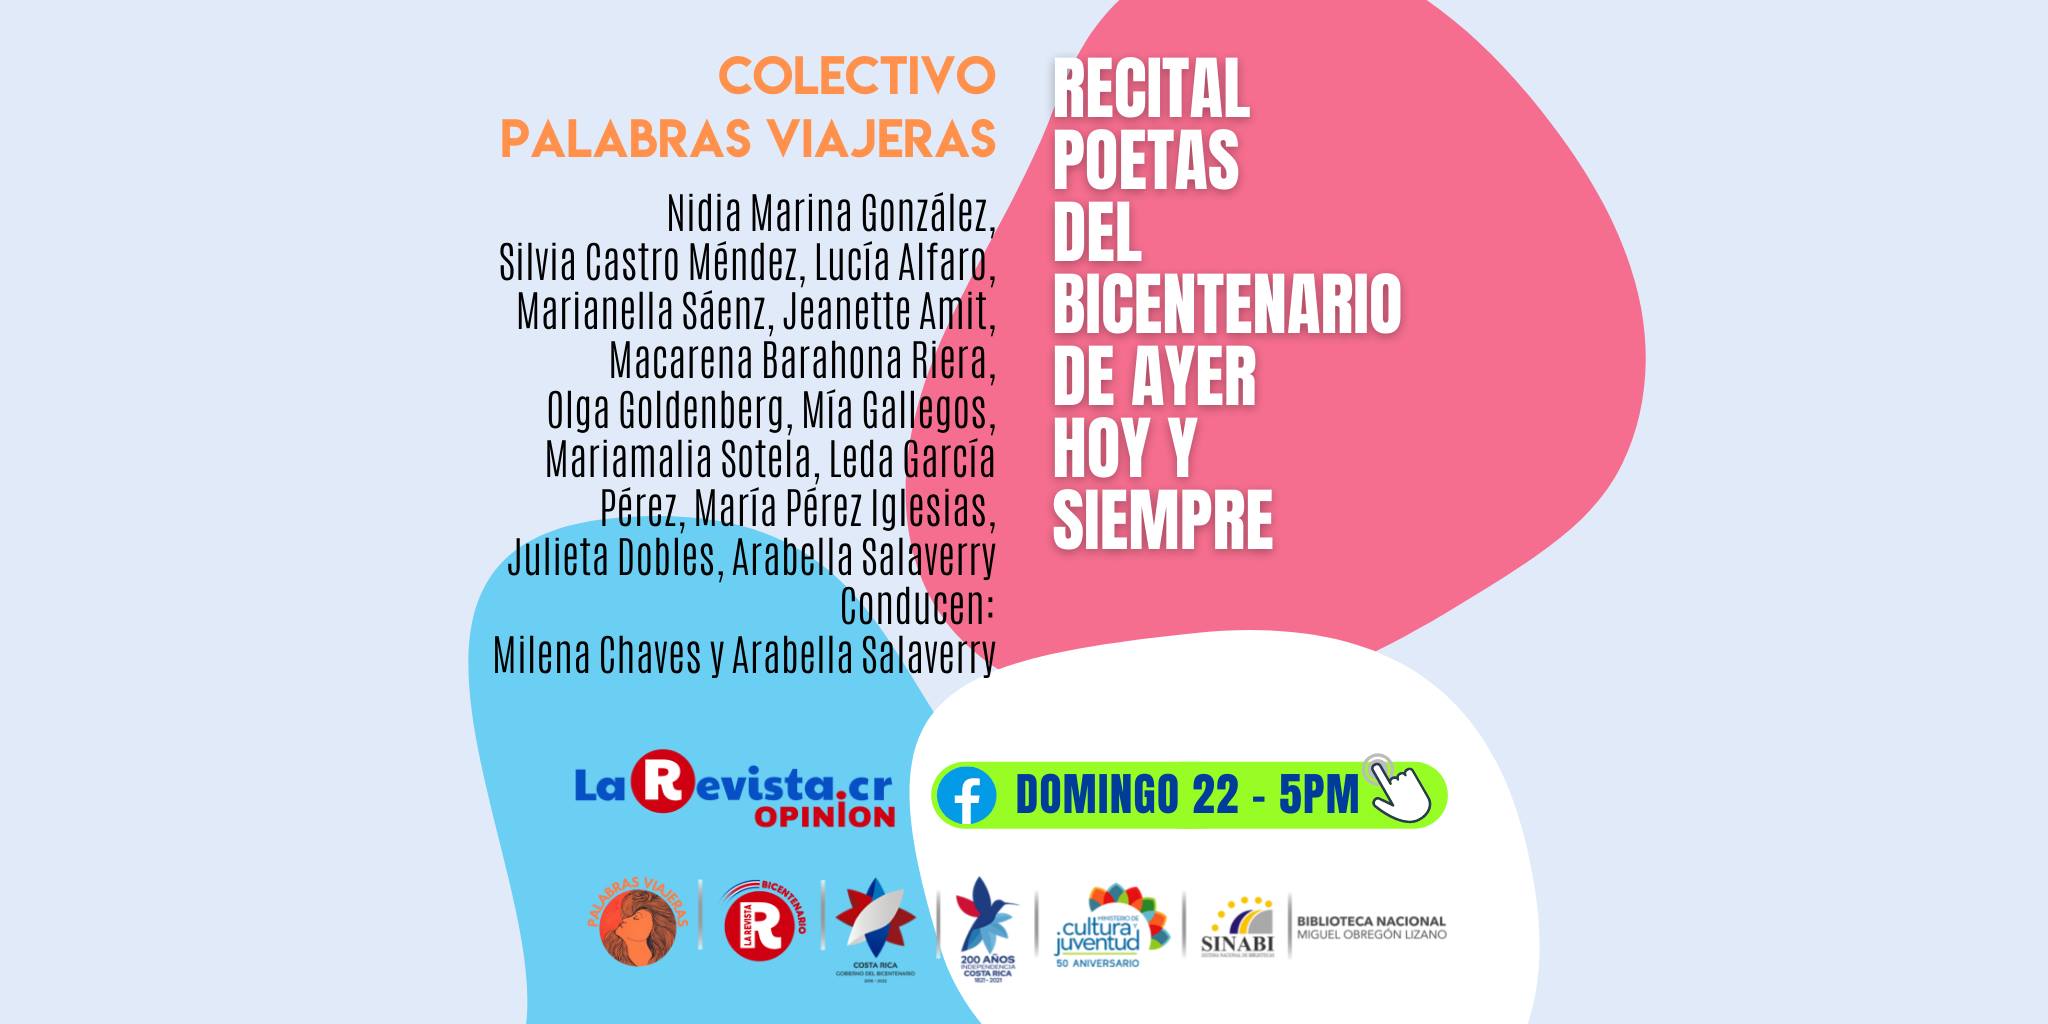 Colectivo Palabras Viajeras: Poetas del Bicentenario, de ayer hoy y siempre